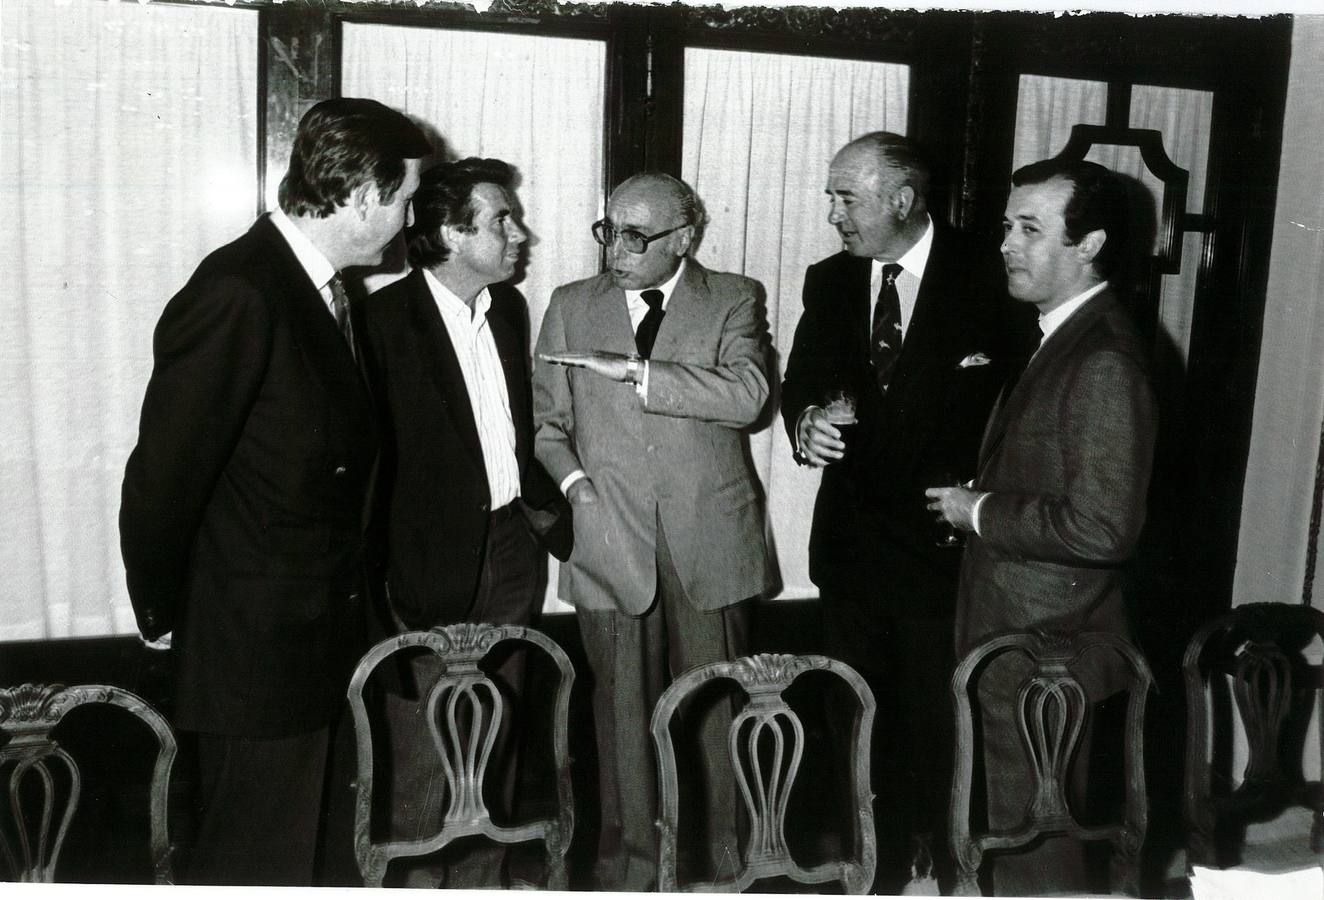 Presentación del proyecto del Club Antares en abril de 1985. En la imagen de izda. a dcha: José Antonio González-Barba, Manolo Santana, Manuel Clavero, el conde de la Maza y Javier Benjumea Llorente